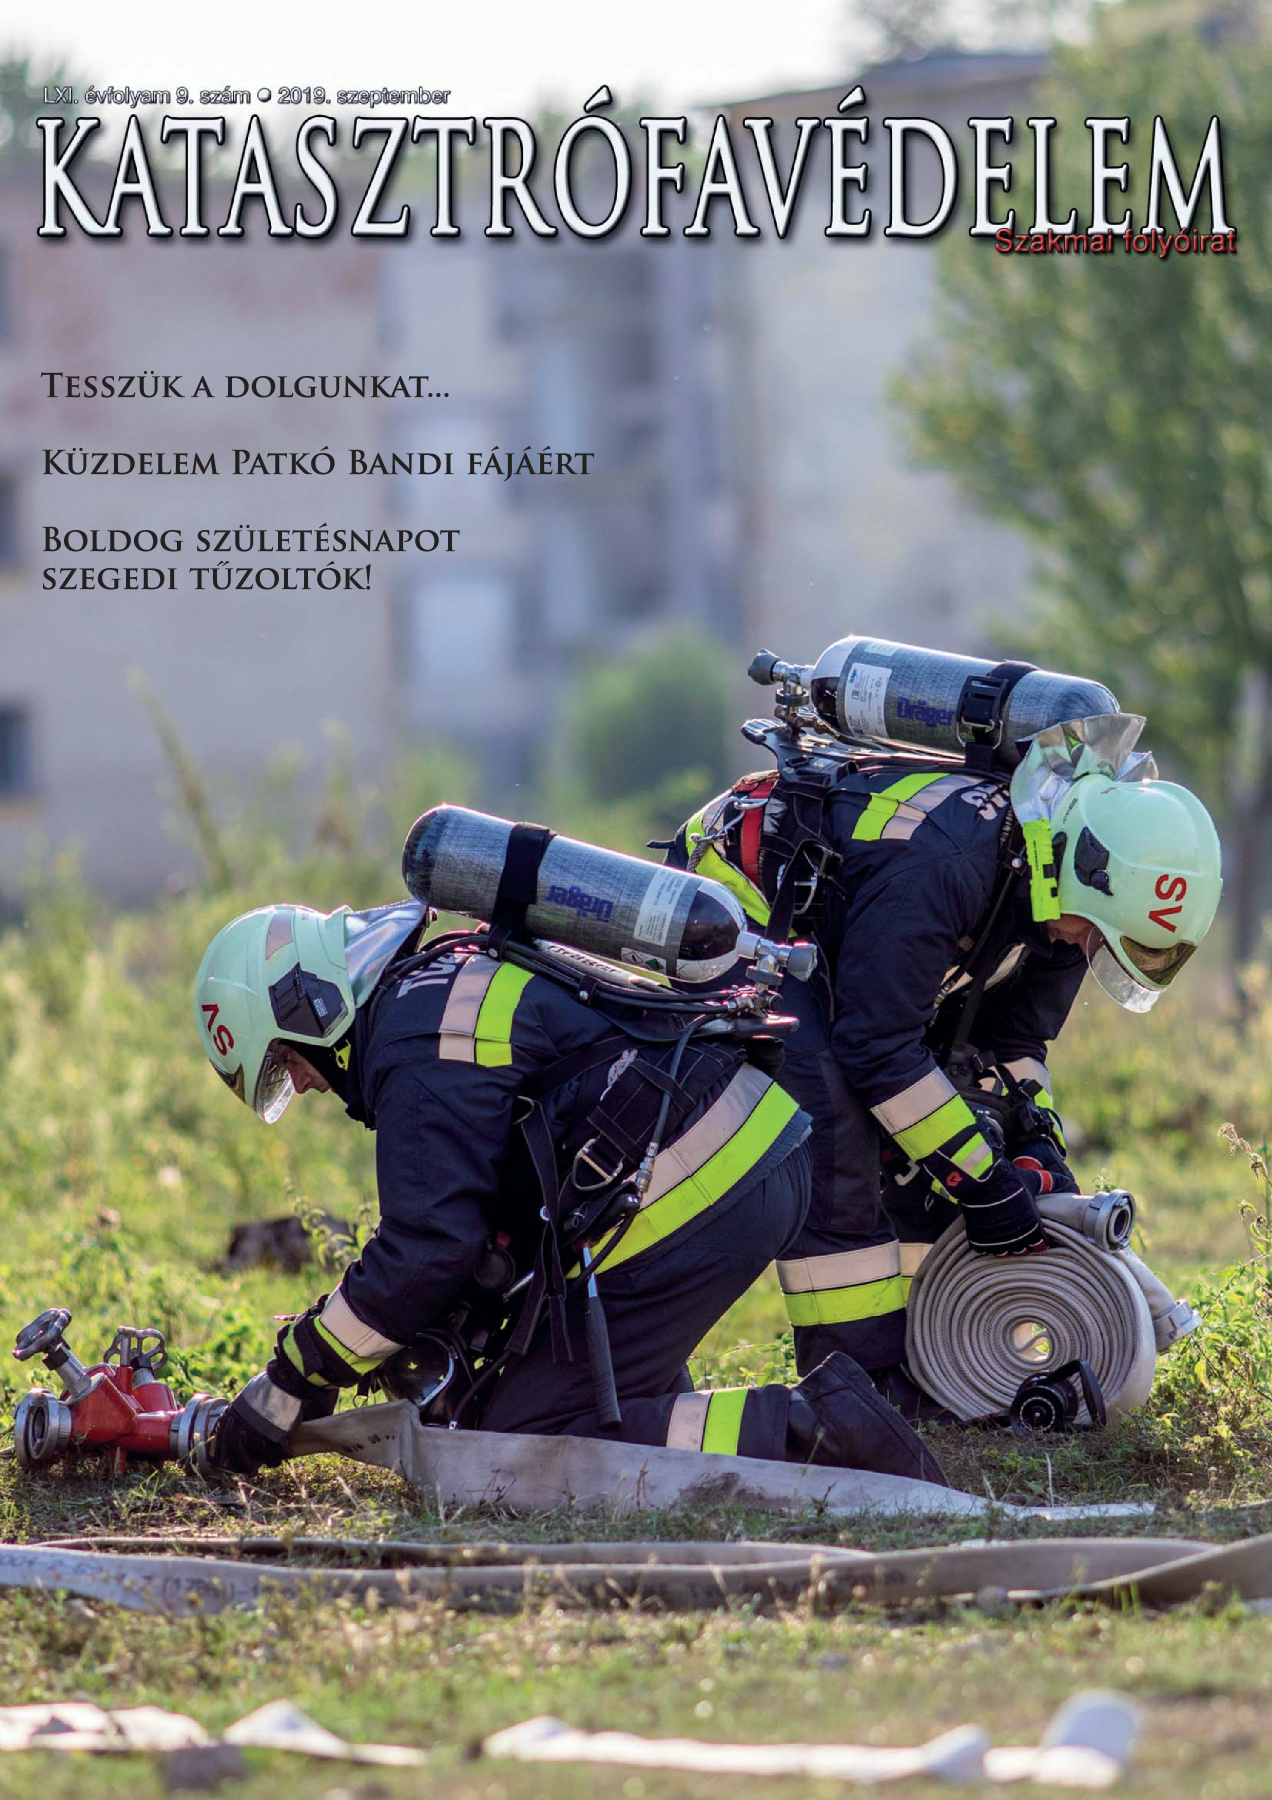 A Katasztrófavédelem magazin LXI. évfolyam 9. szám megtekintése